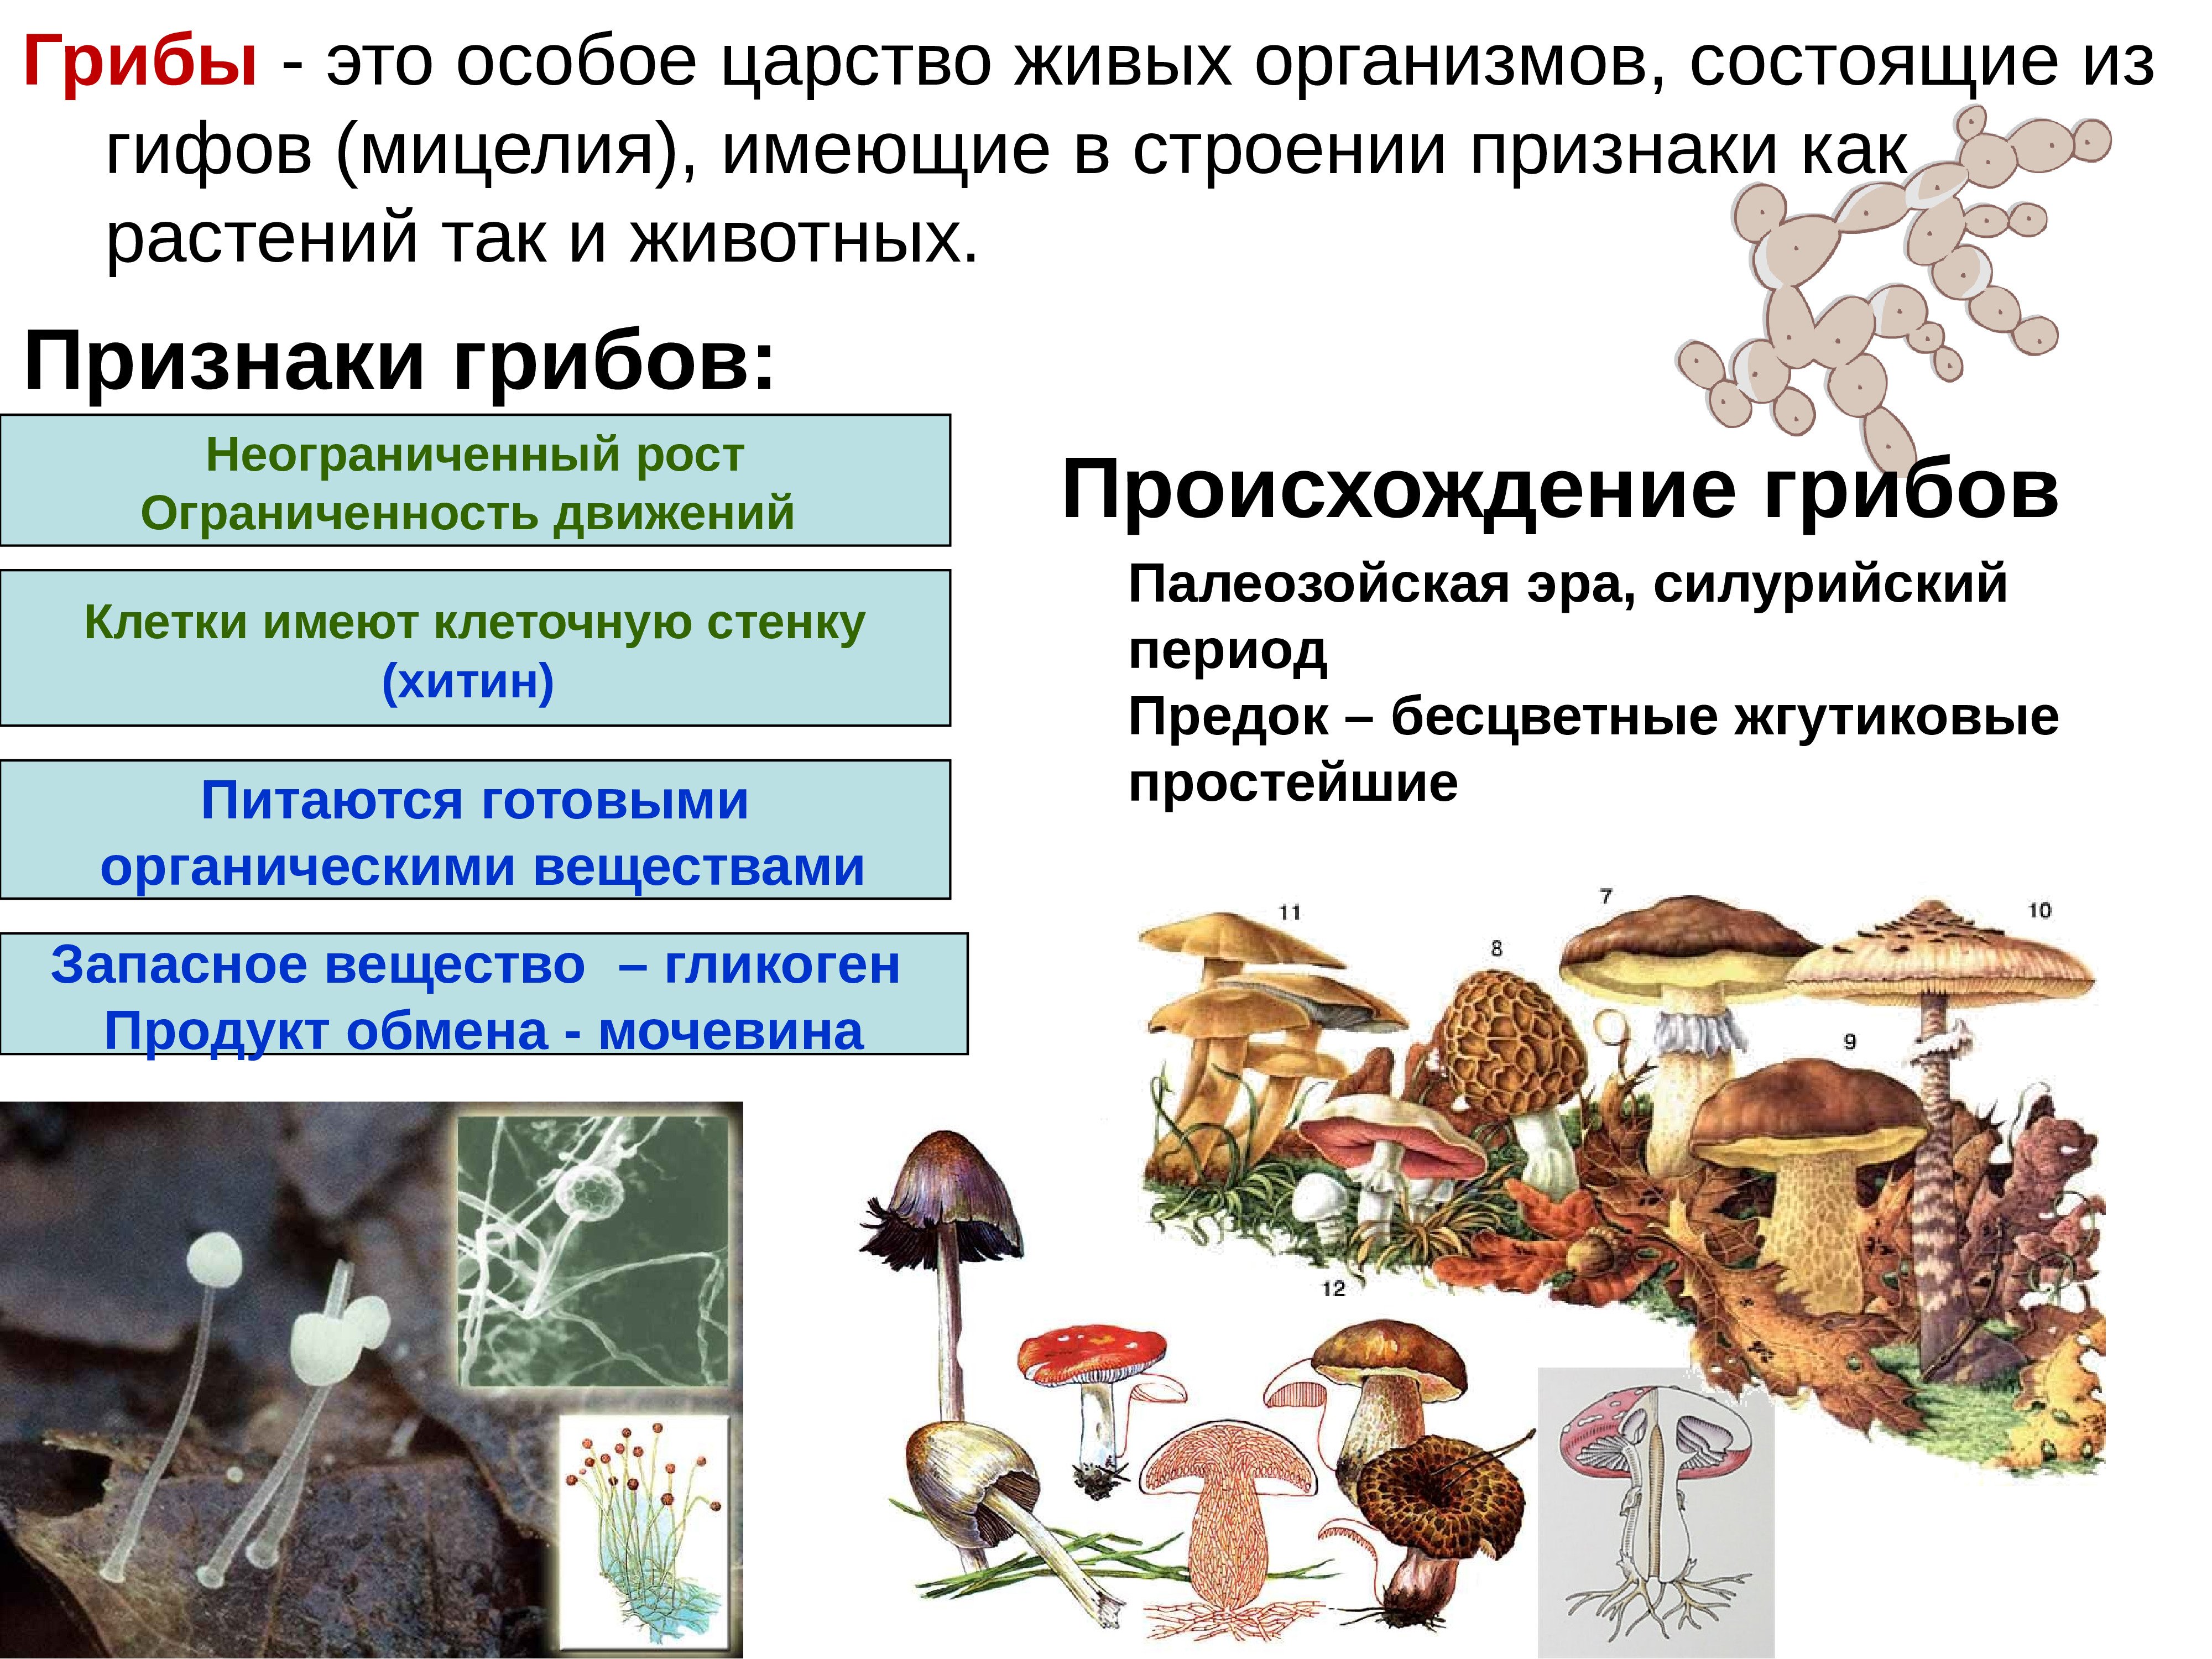 Грибы особая группа организмов. Признаки характерные для царства грибы. Царства живых организмов грибы. Грибы царство грибов. Грибы особое царство живых организмов.